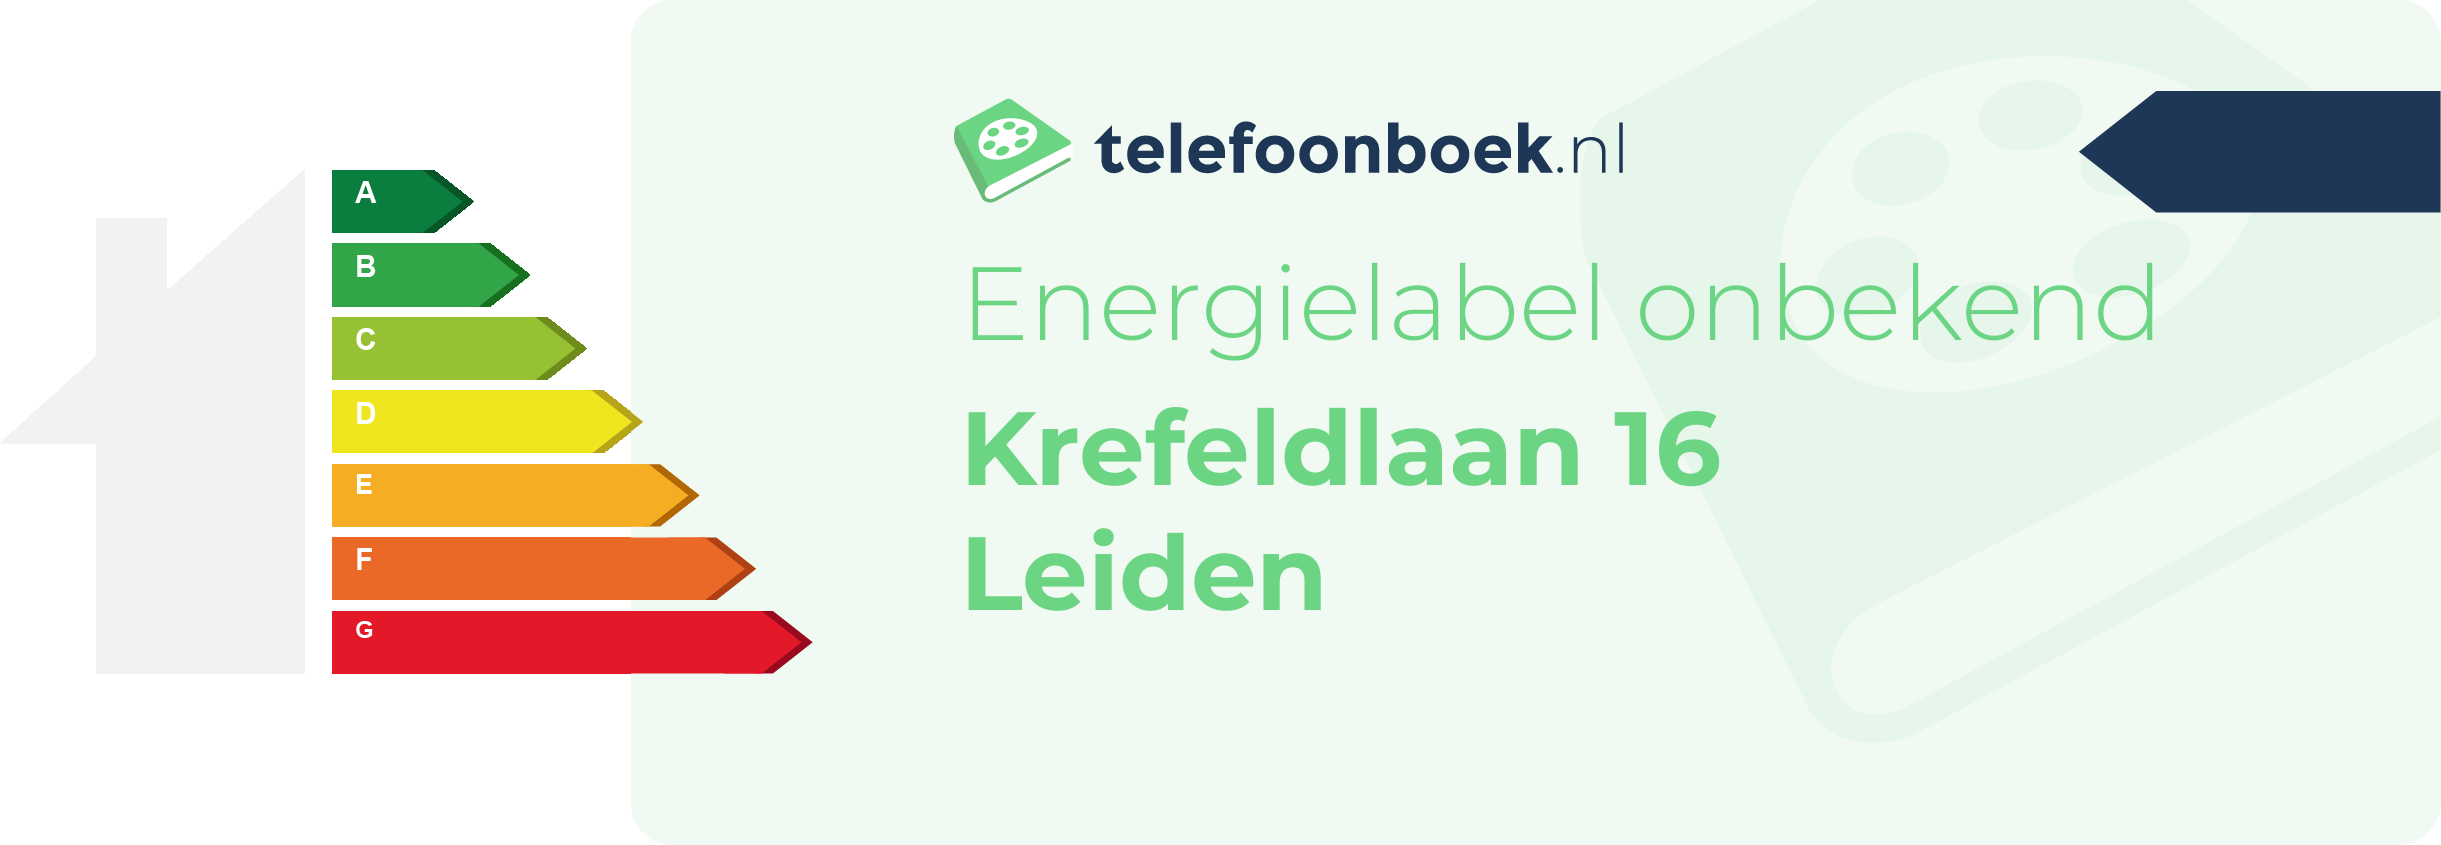 Energielabel Krefeldlaan 16 Leiden